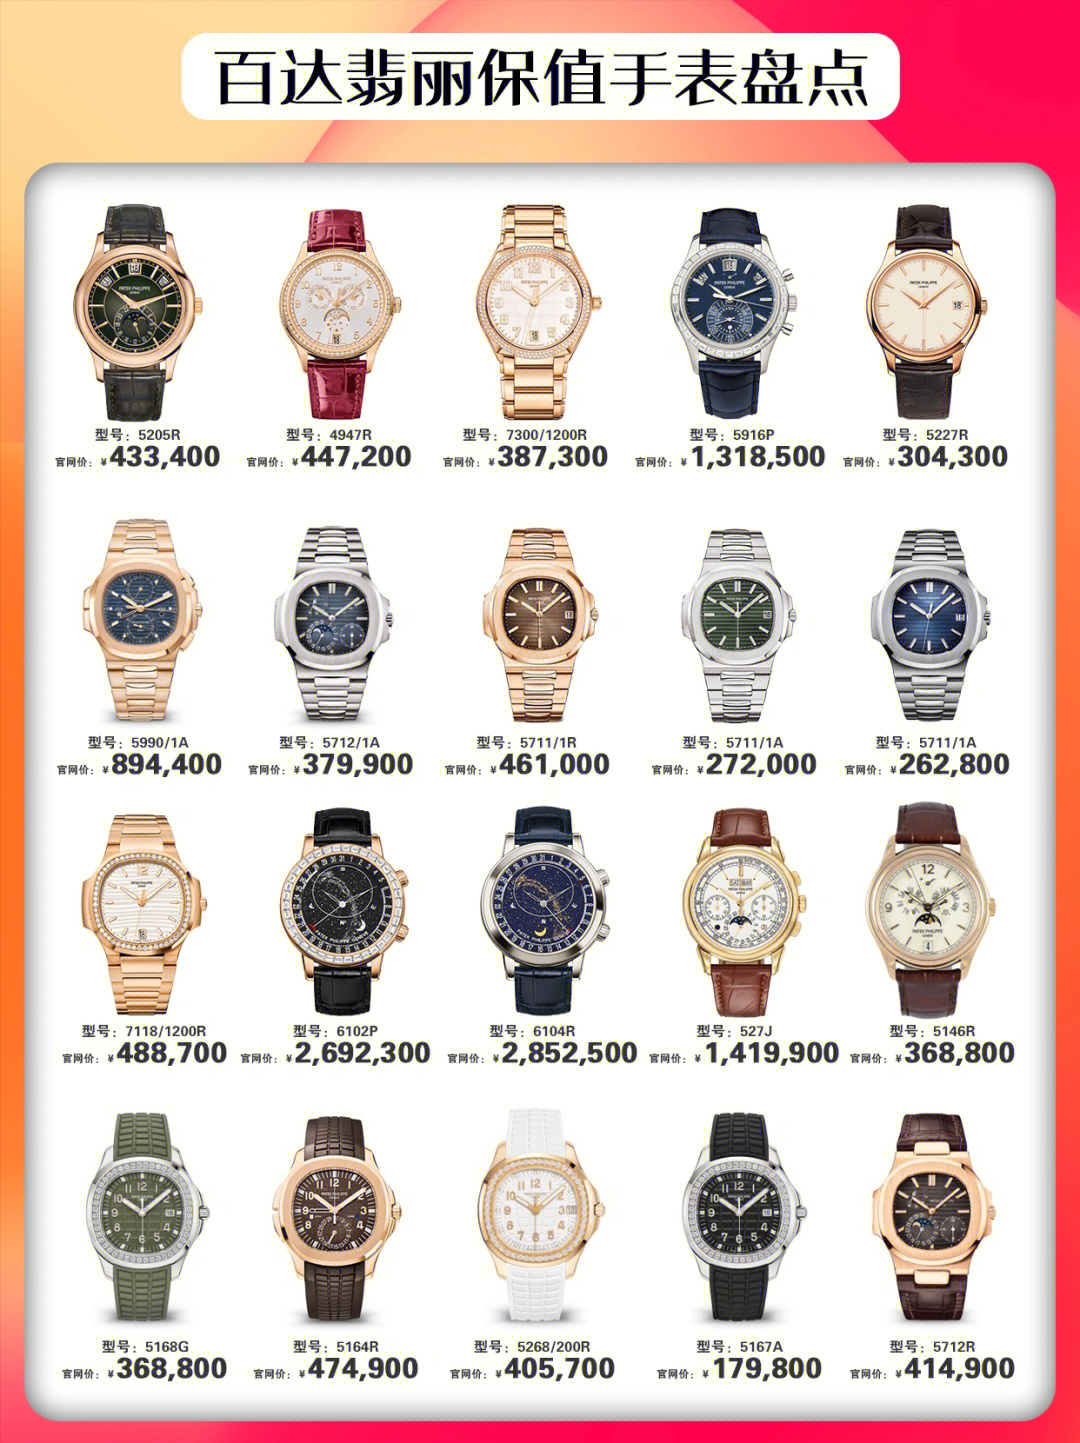 百达翡丽是一家始于1839年的瑞士著名钟表品牌,是世界十大名表之首,由